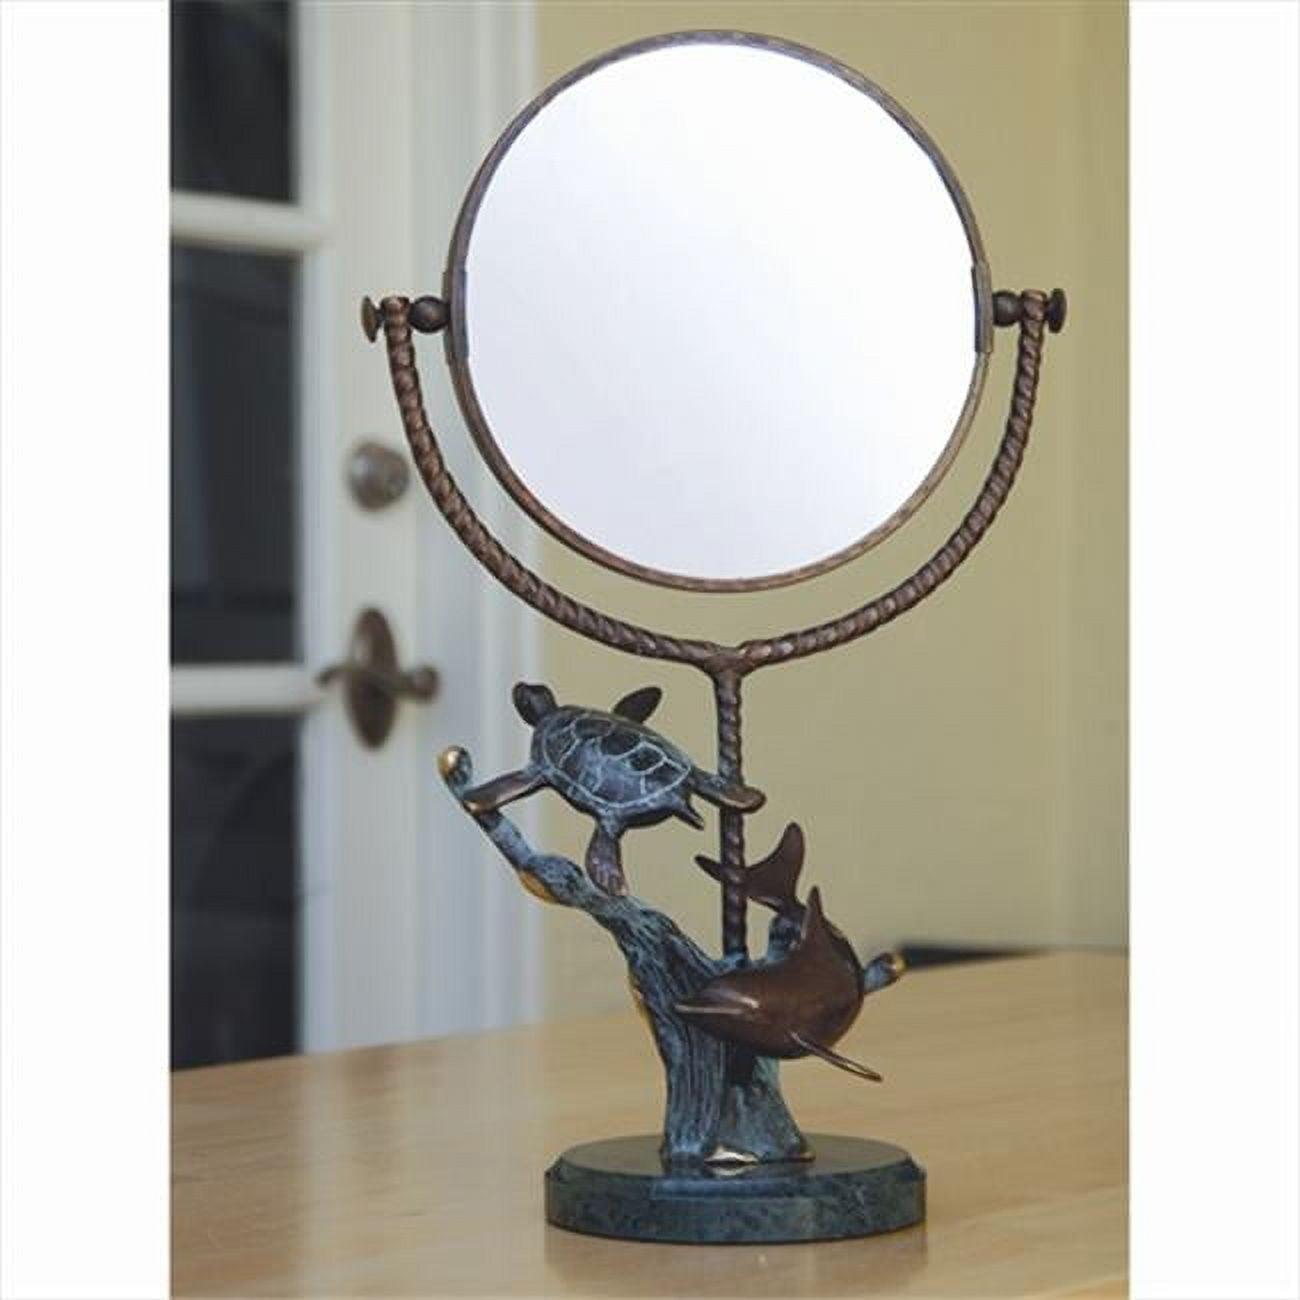 Elegant Full-Length Round Vanity Mirror with Brown Metal & Marble Frame